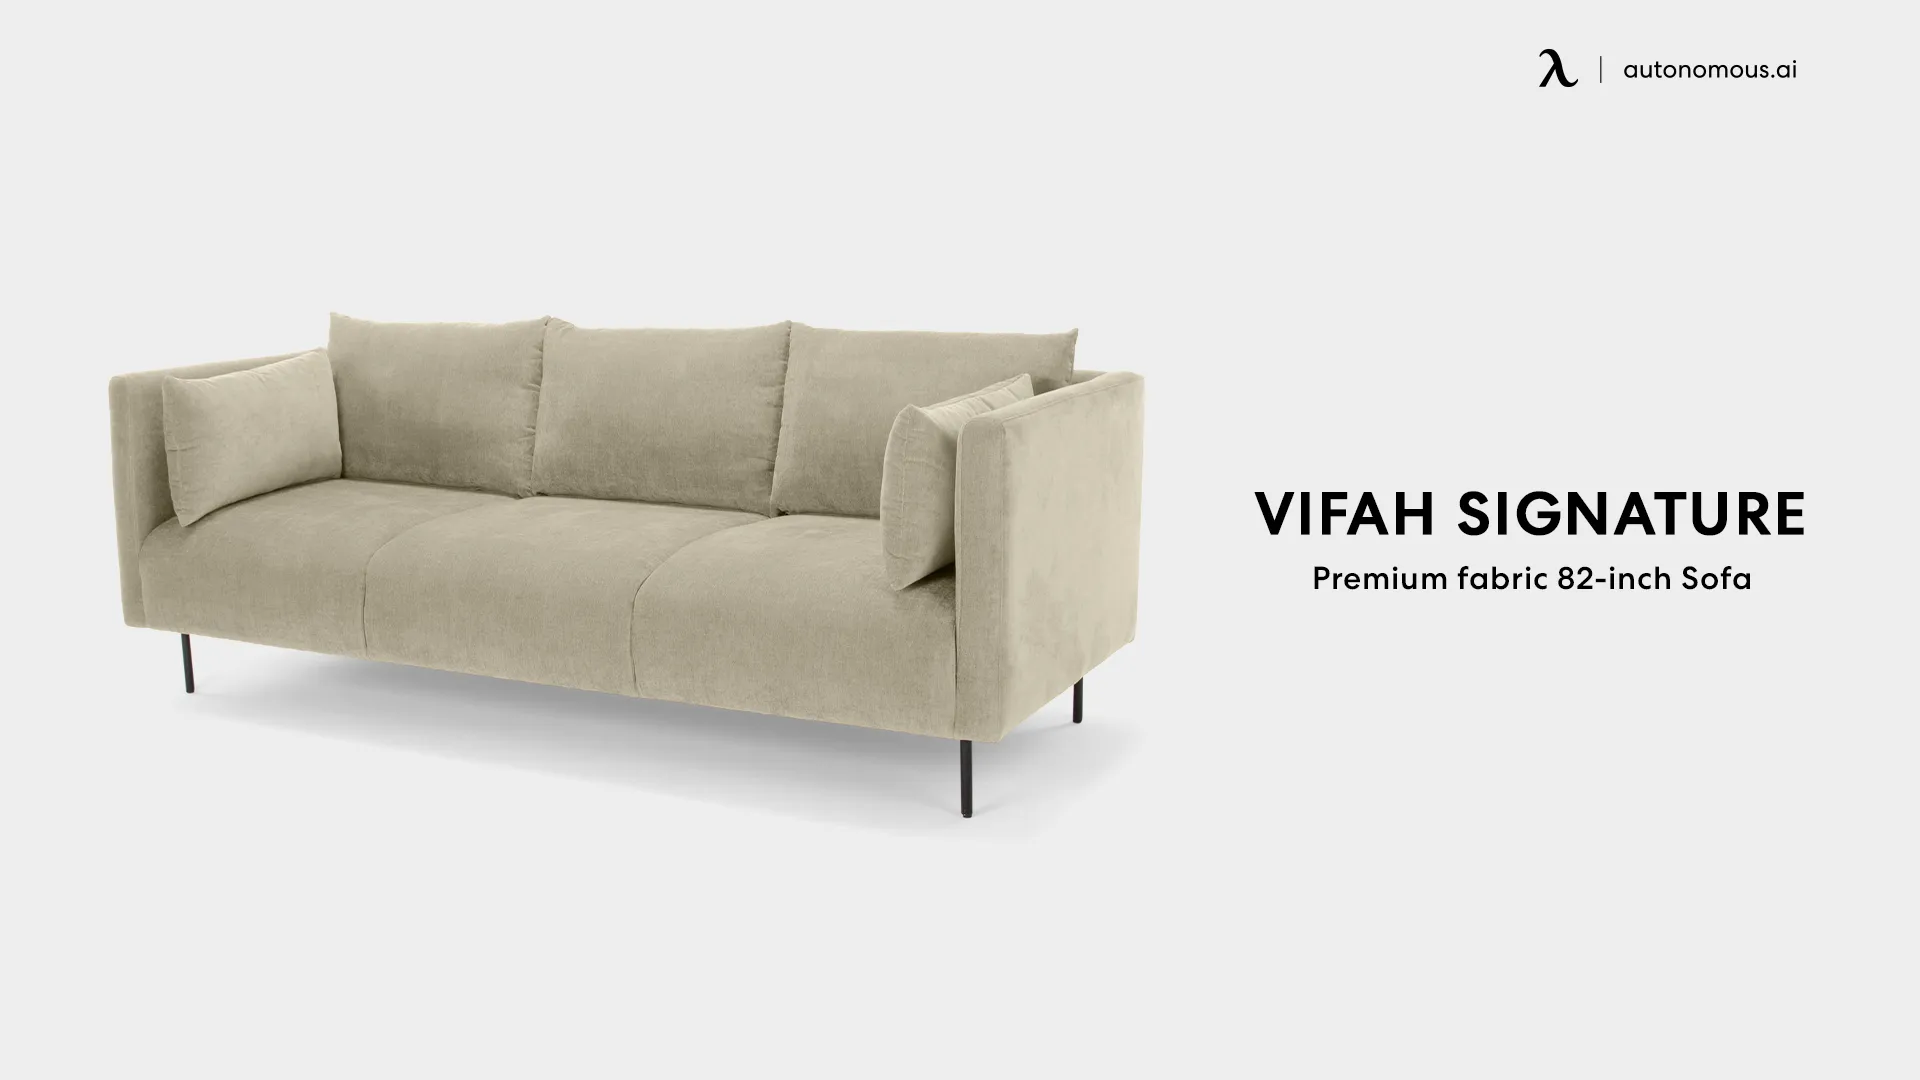 VIFAH SIGNATURE 82-inch Italian design premium fabric sofa